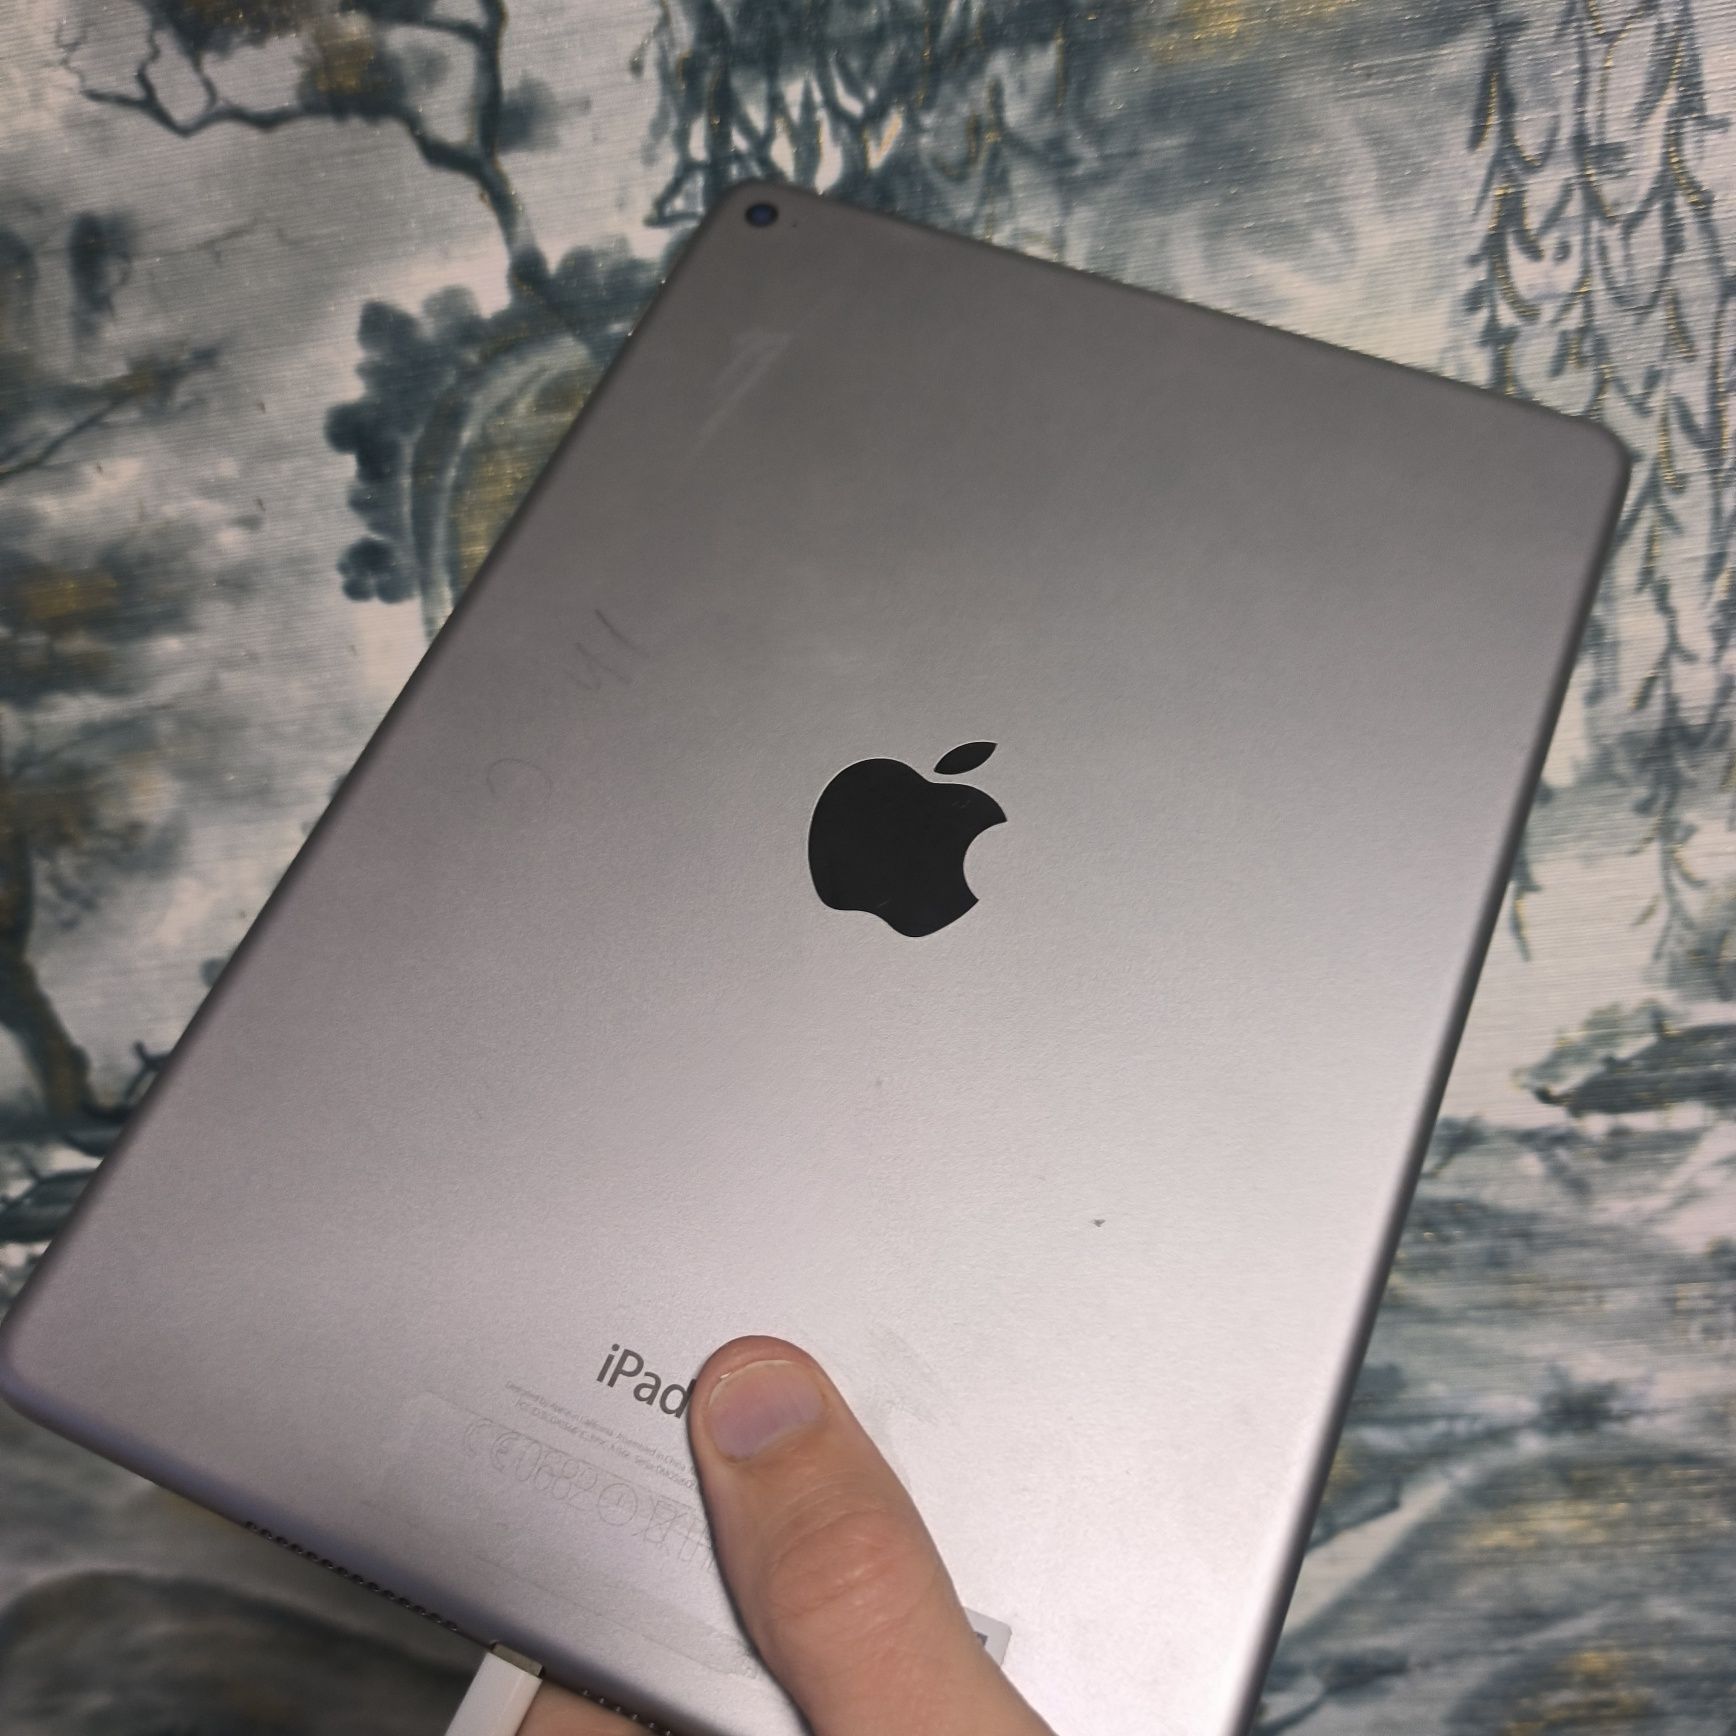 Apple A1566 iPad Air 2 Wi-Fi 16GB